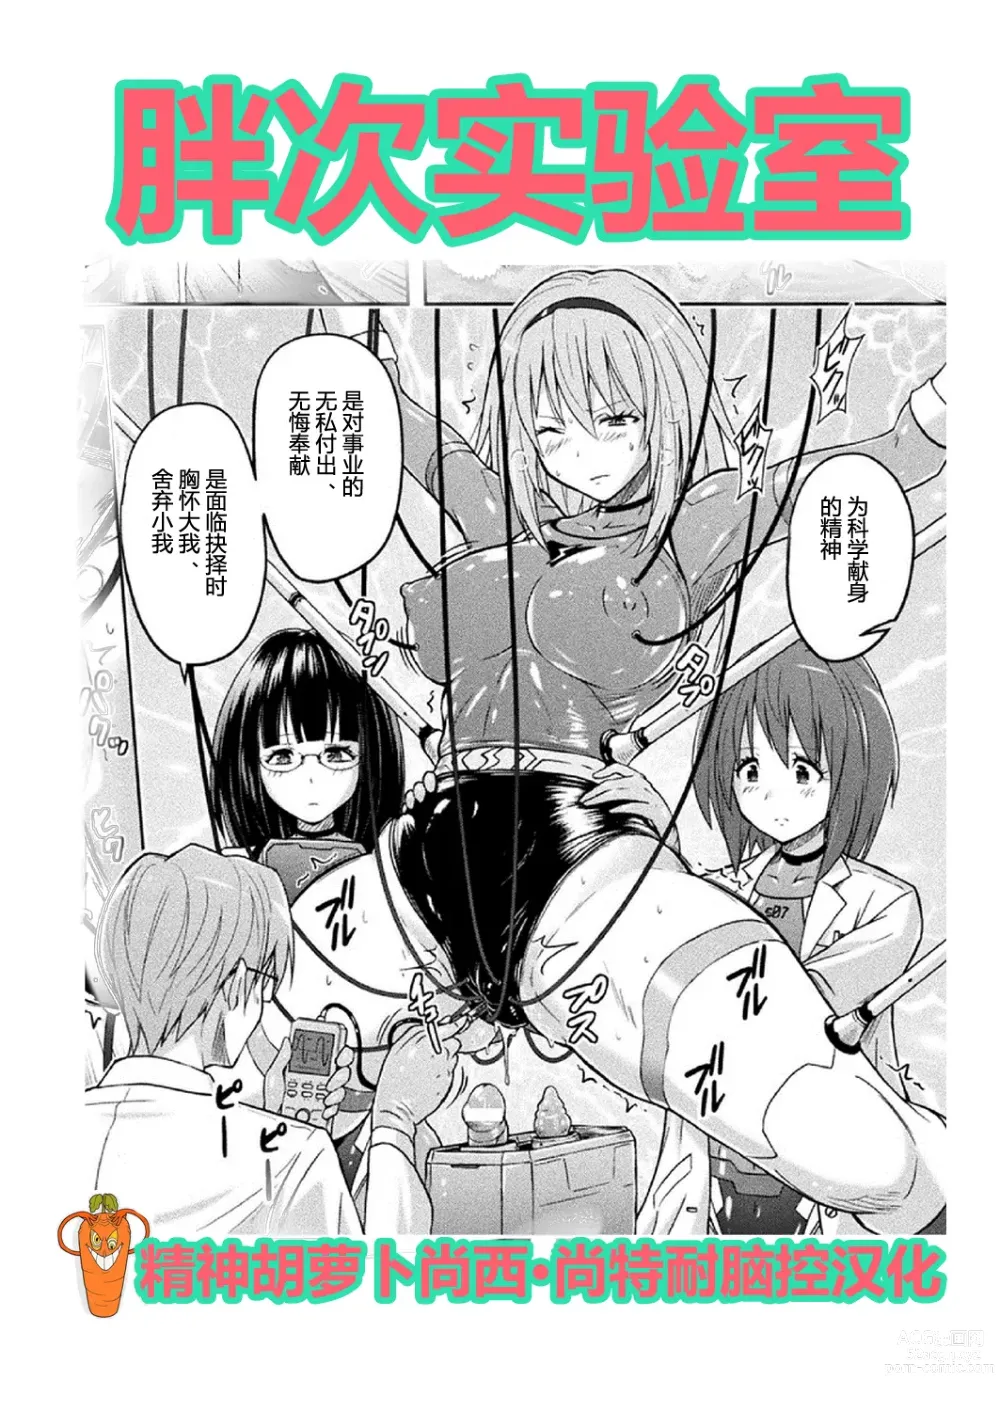 Page 1 of manga 胖次实验室 正篇+加笔【精神胡萝卜尚西·尚特耐脑控汉化】